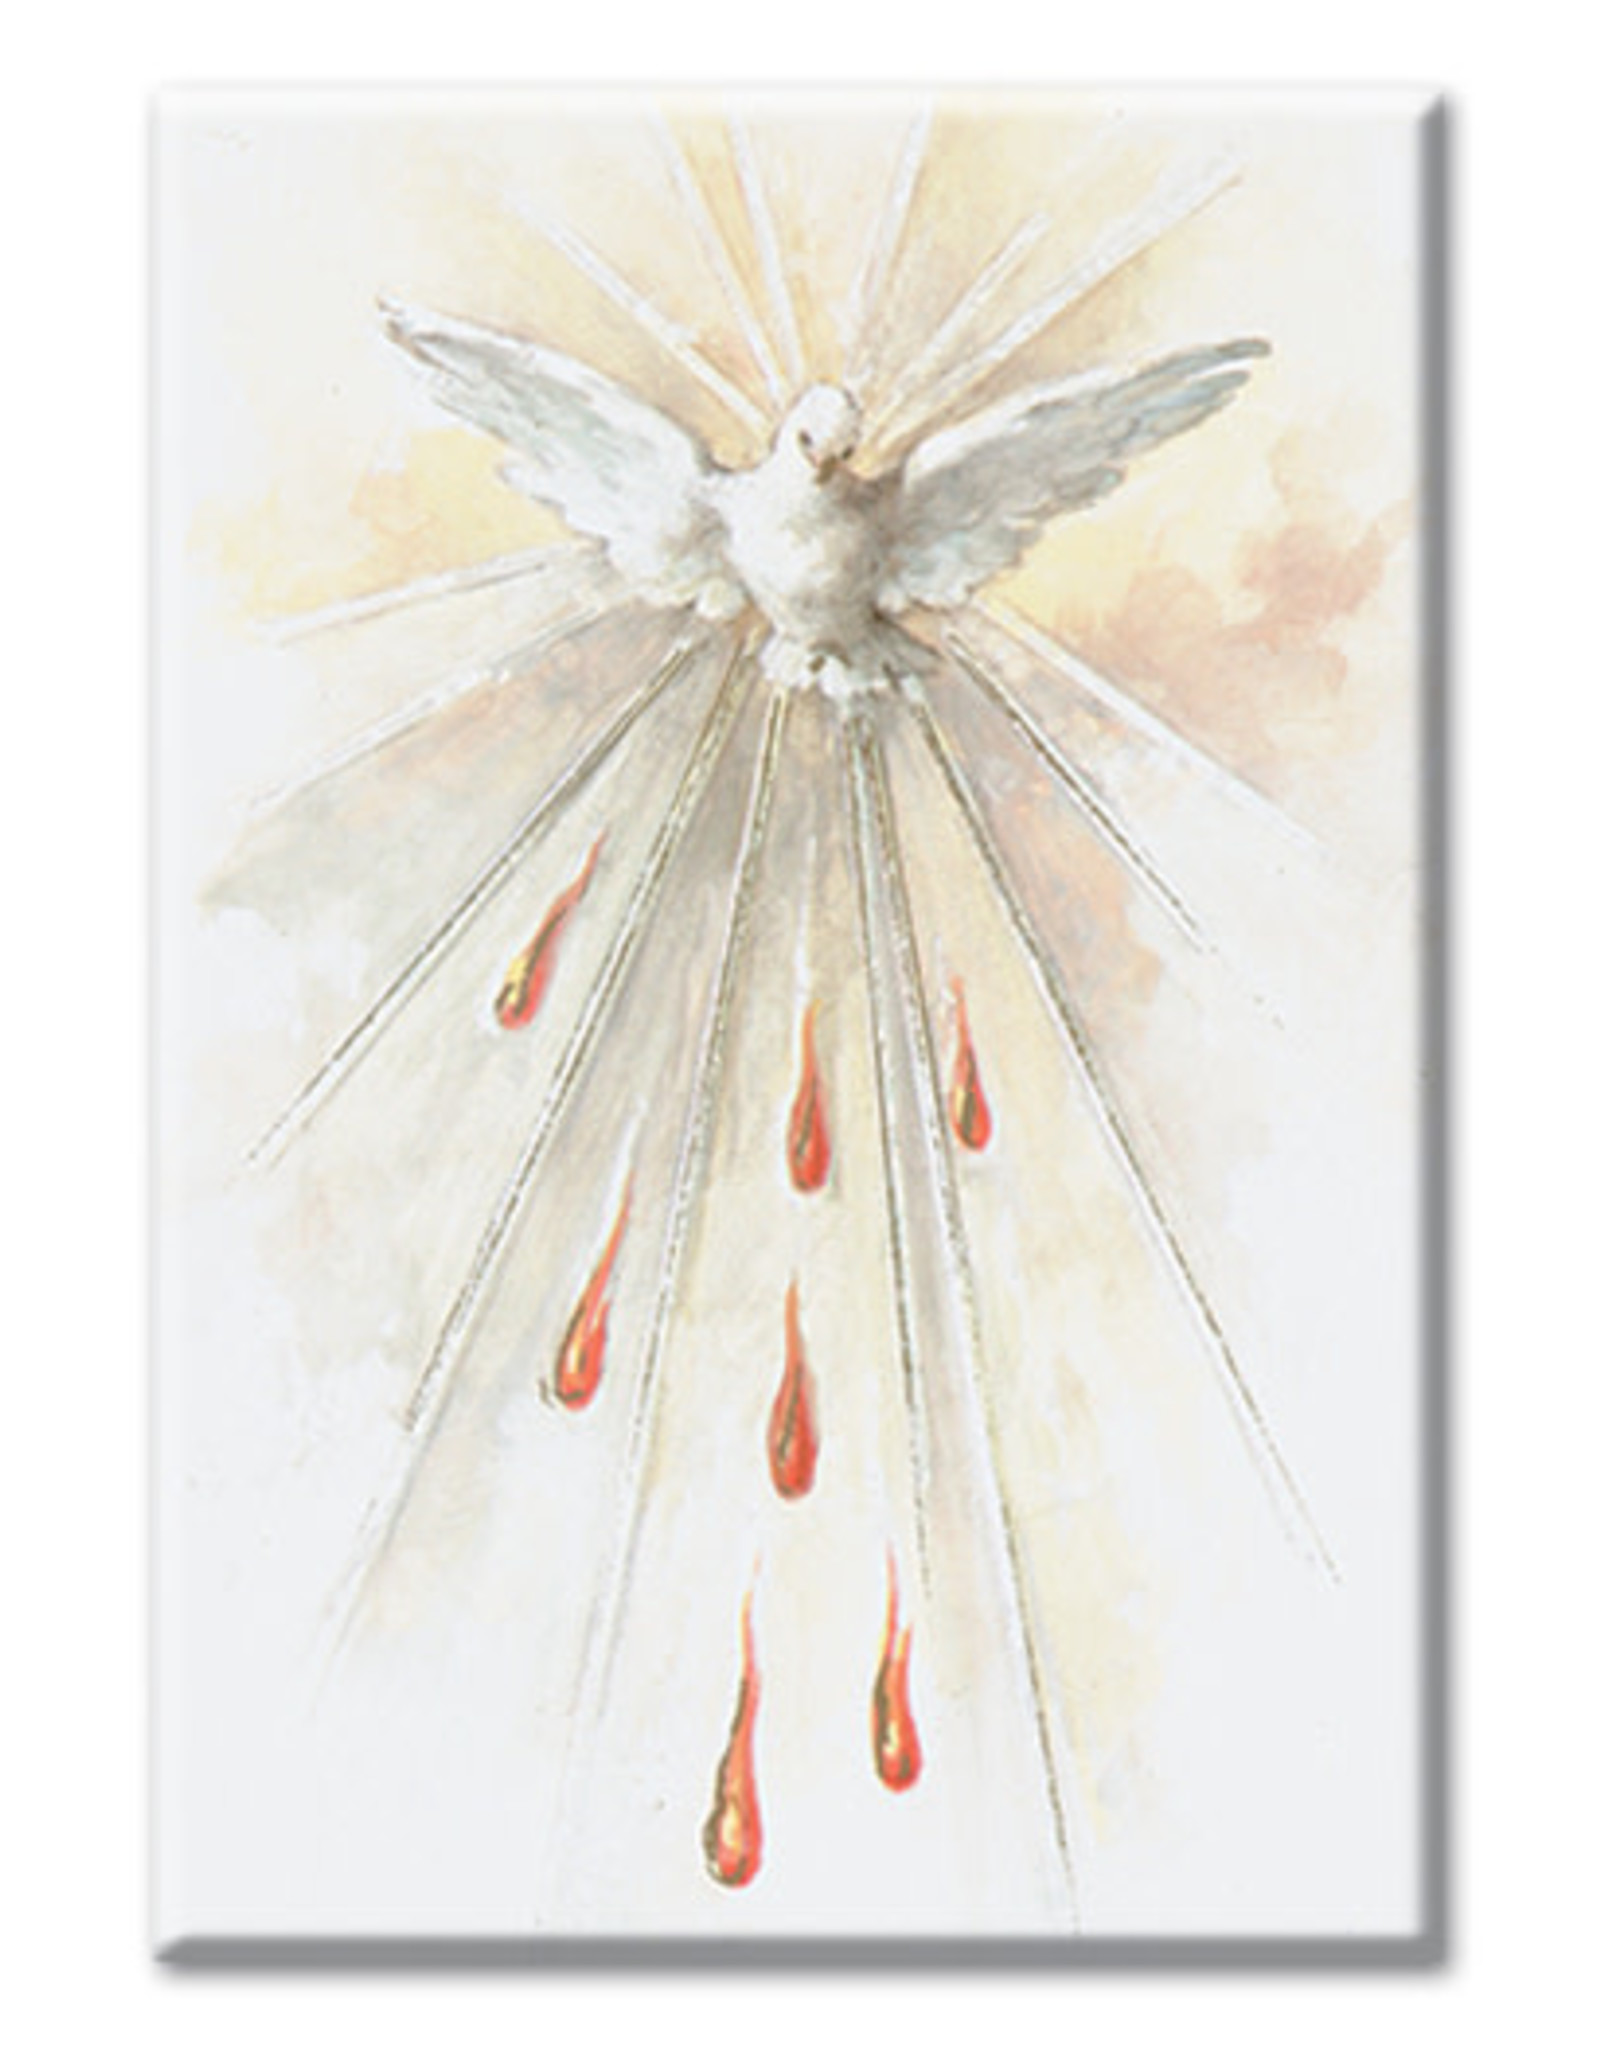 Hirten Holy Spirit Magnet, 2” x 3”